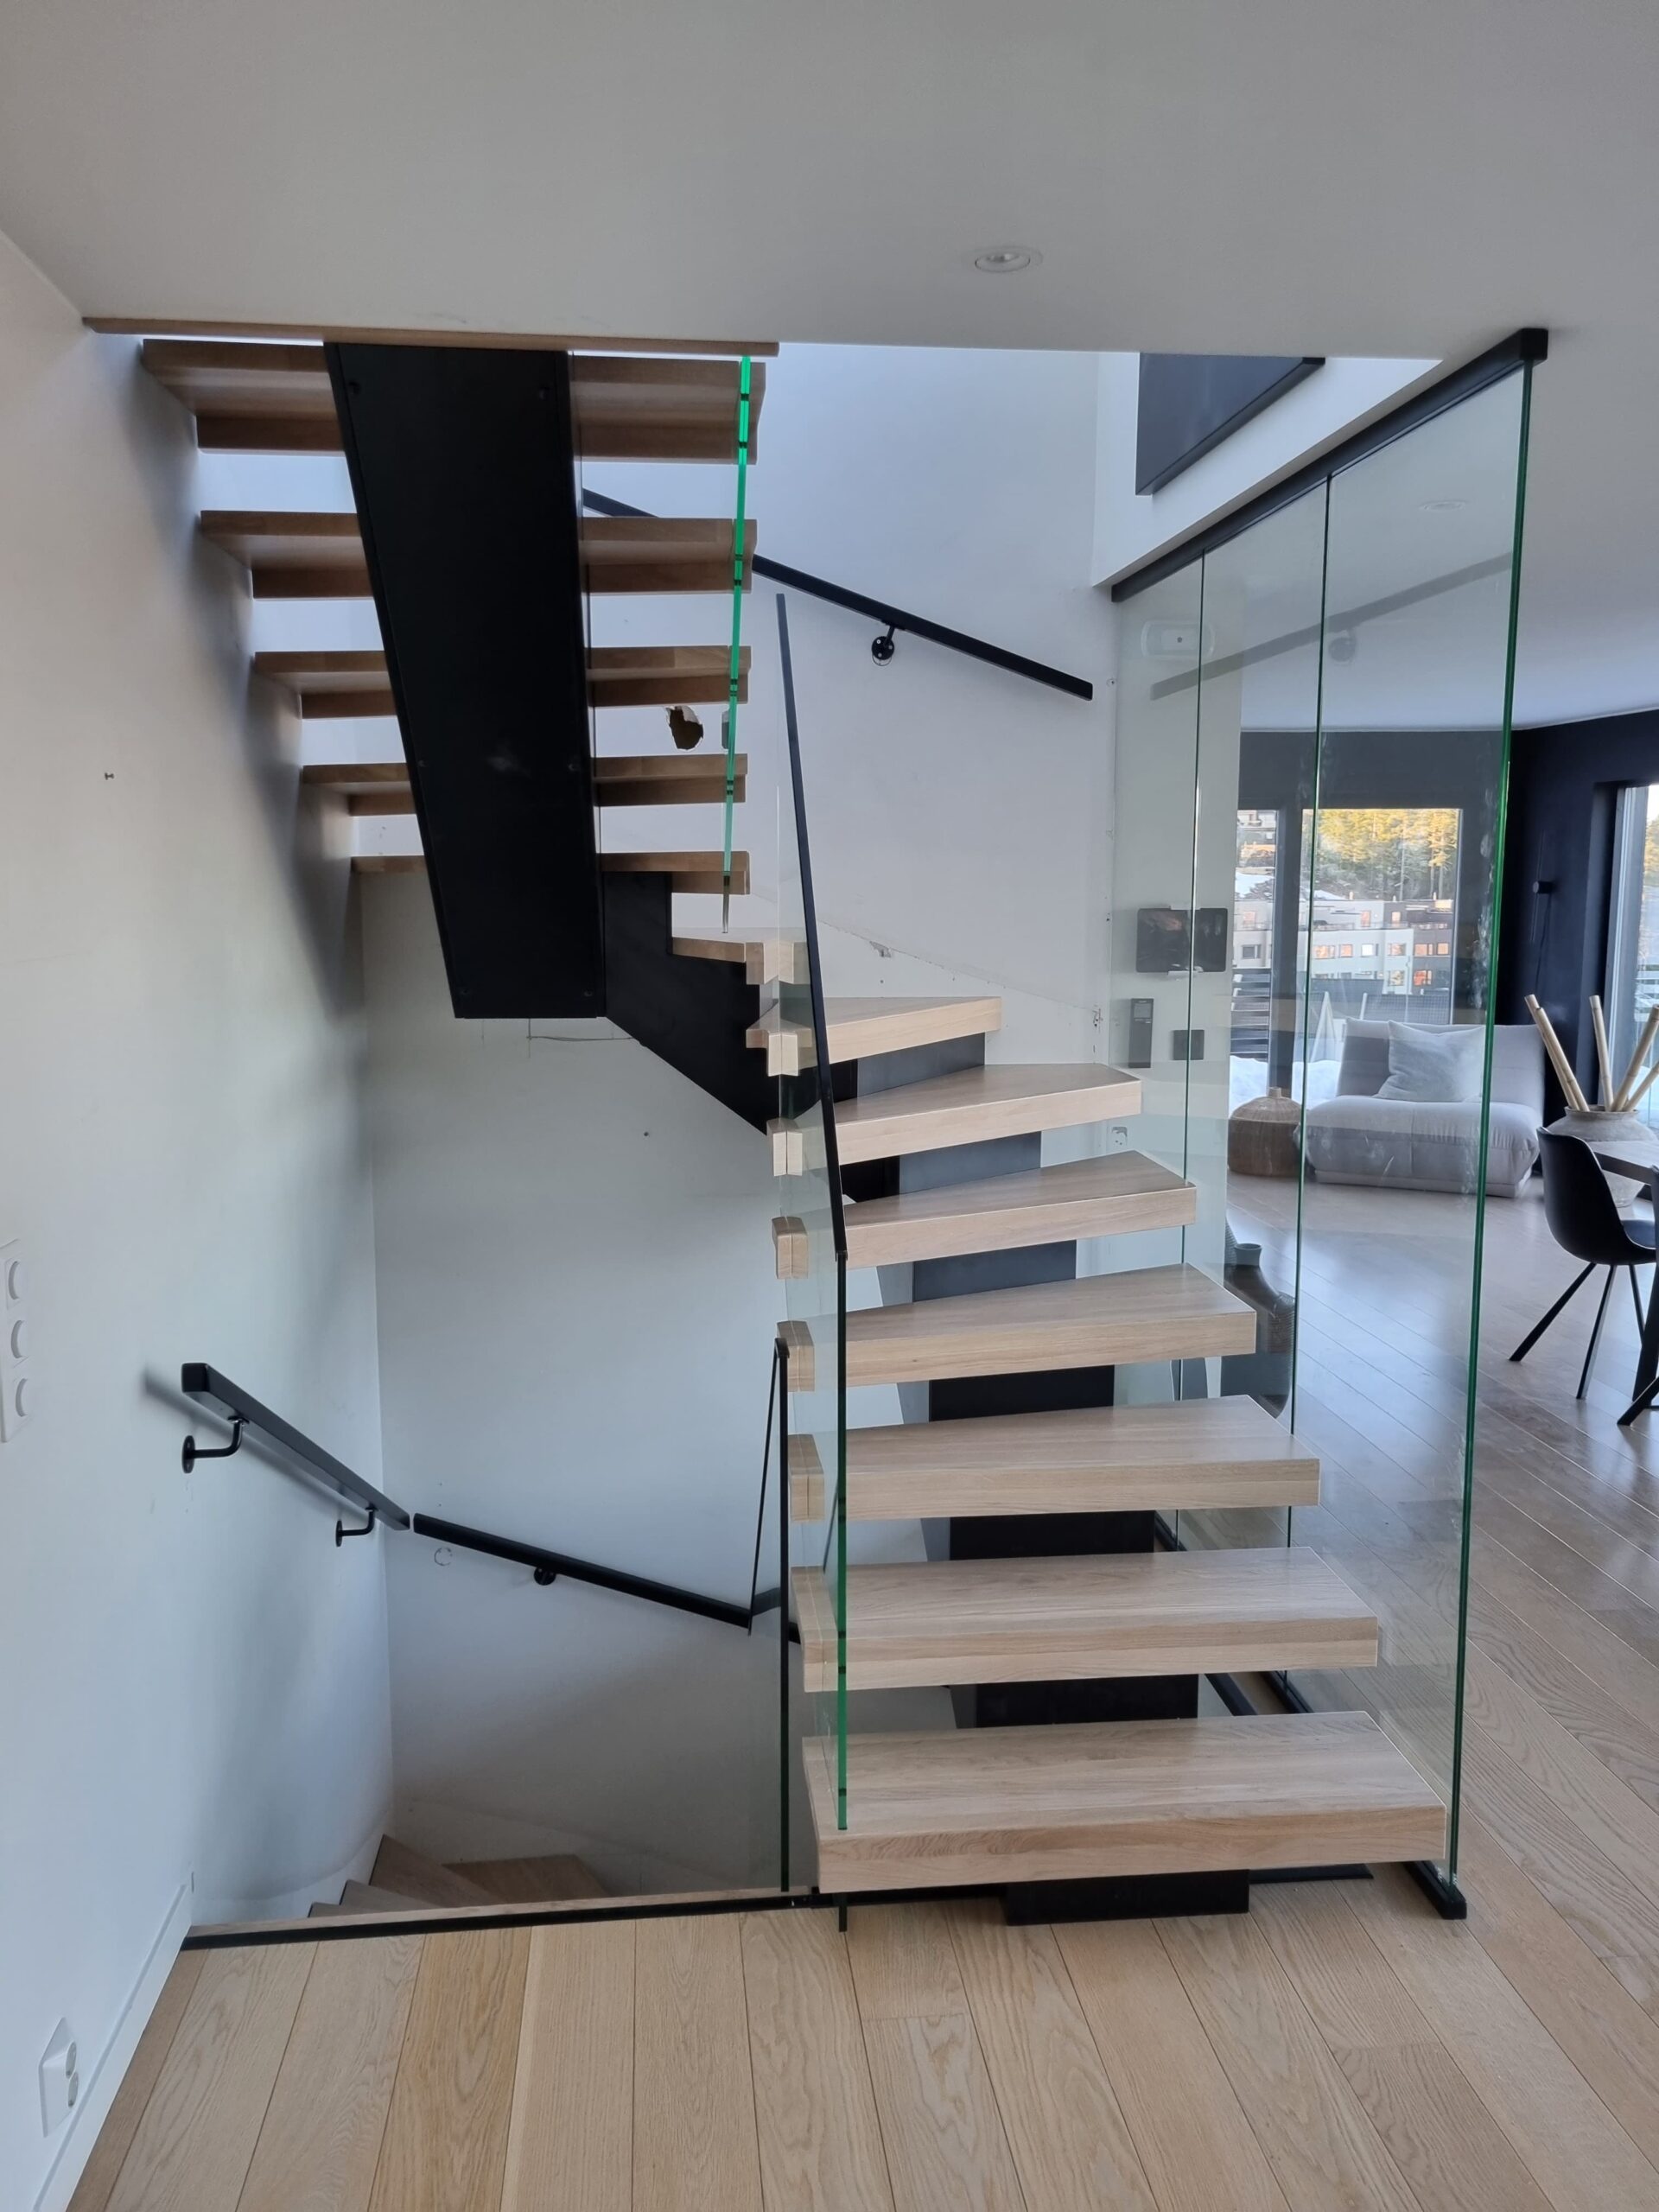 Treppe mit Glasgeländer und Mittelholm über zwei Etagen